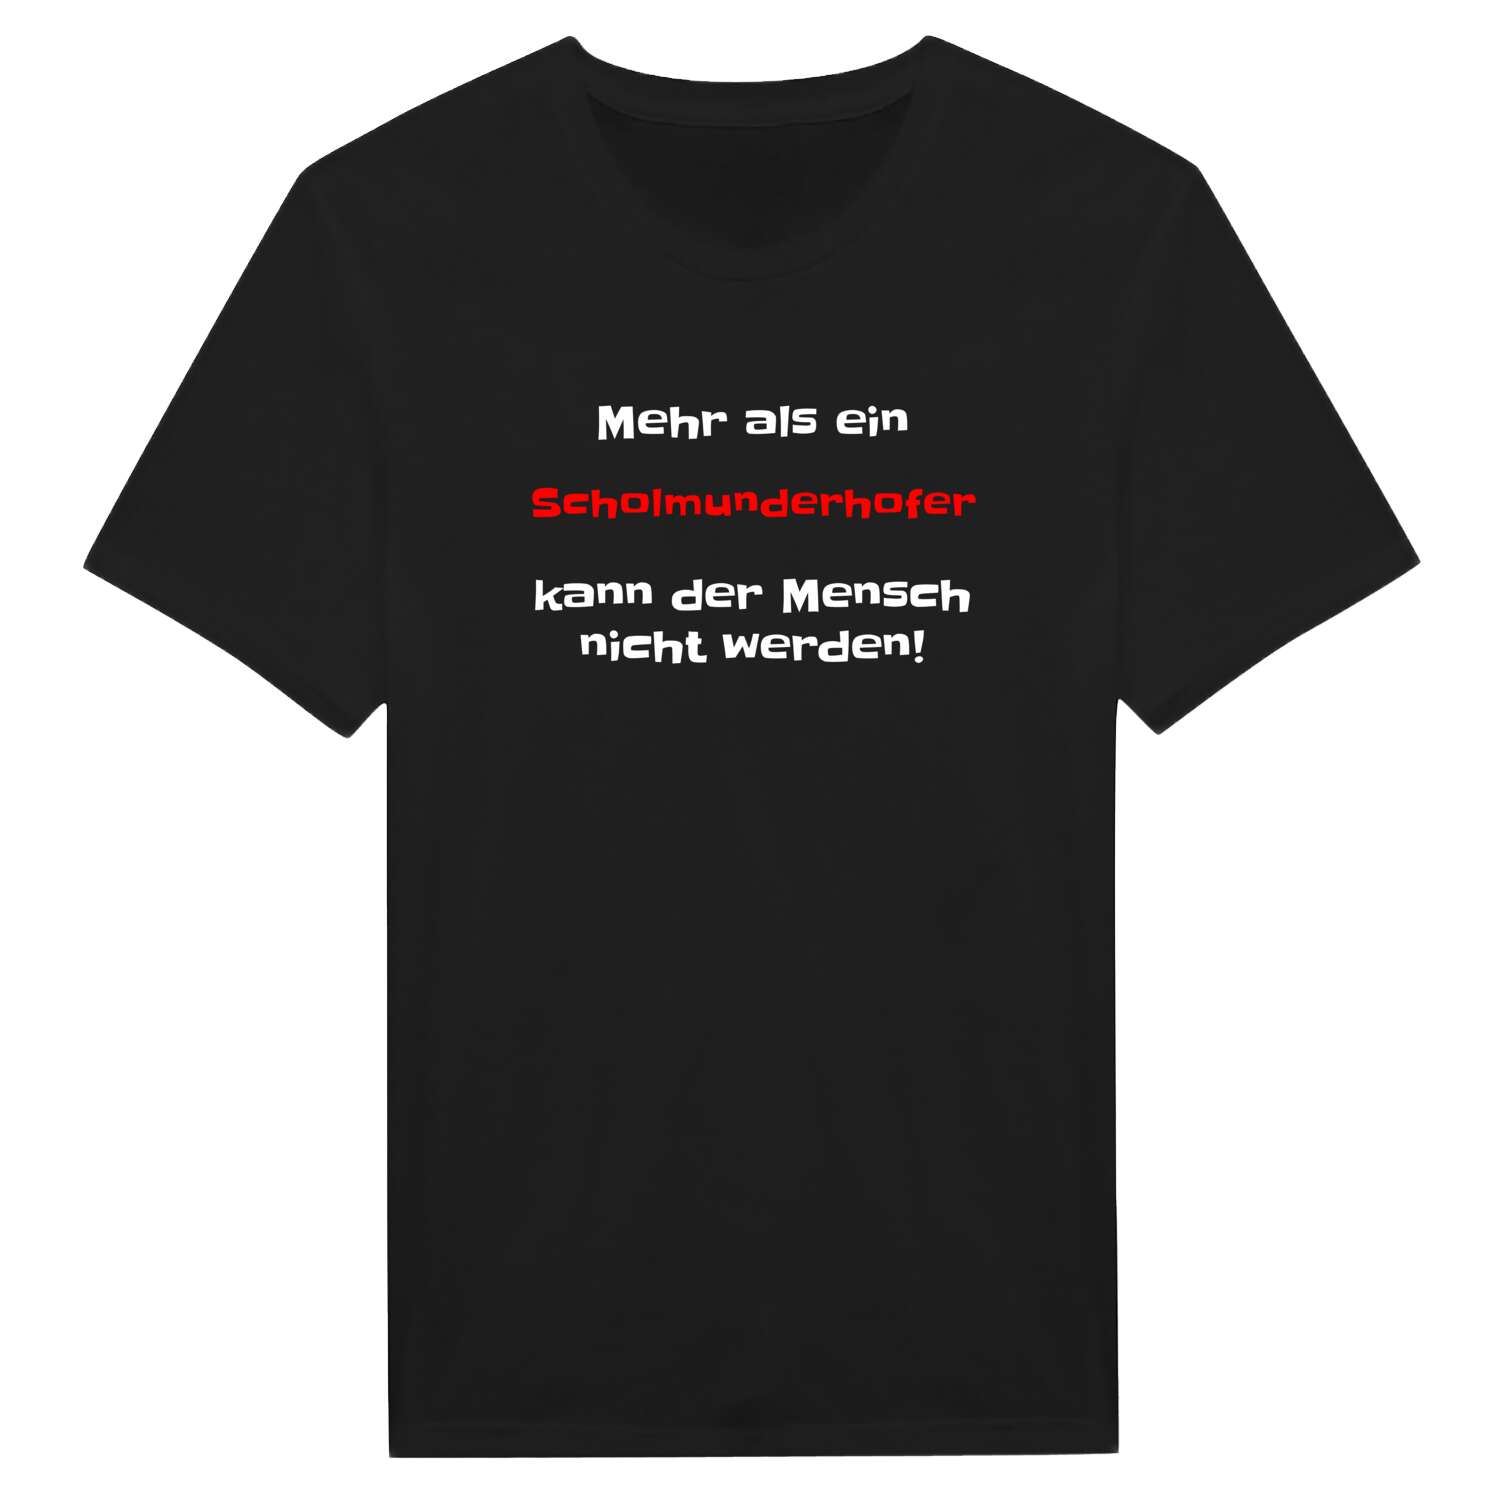 Scholmunderhof T-Shirt »Mehr als ein«